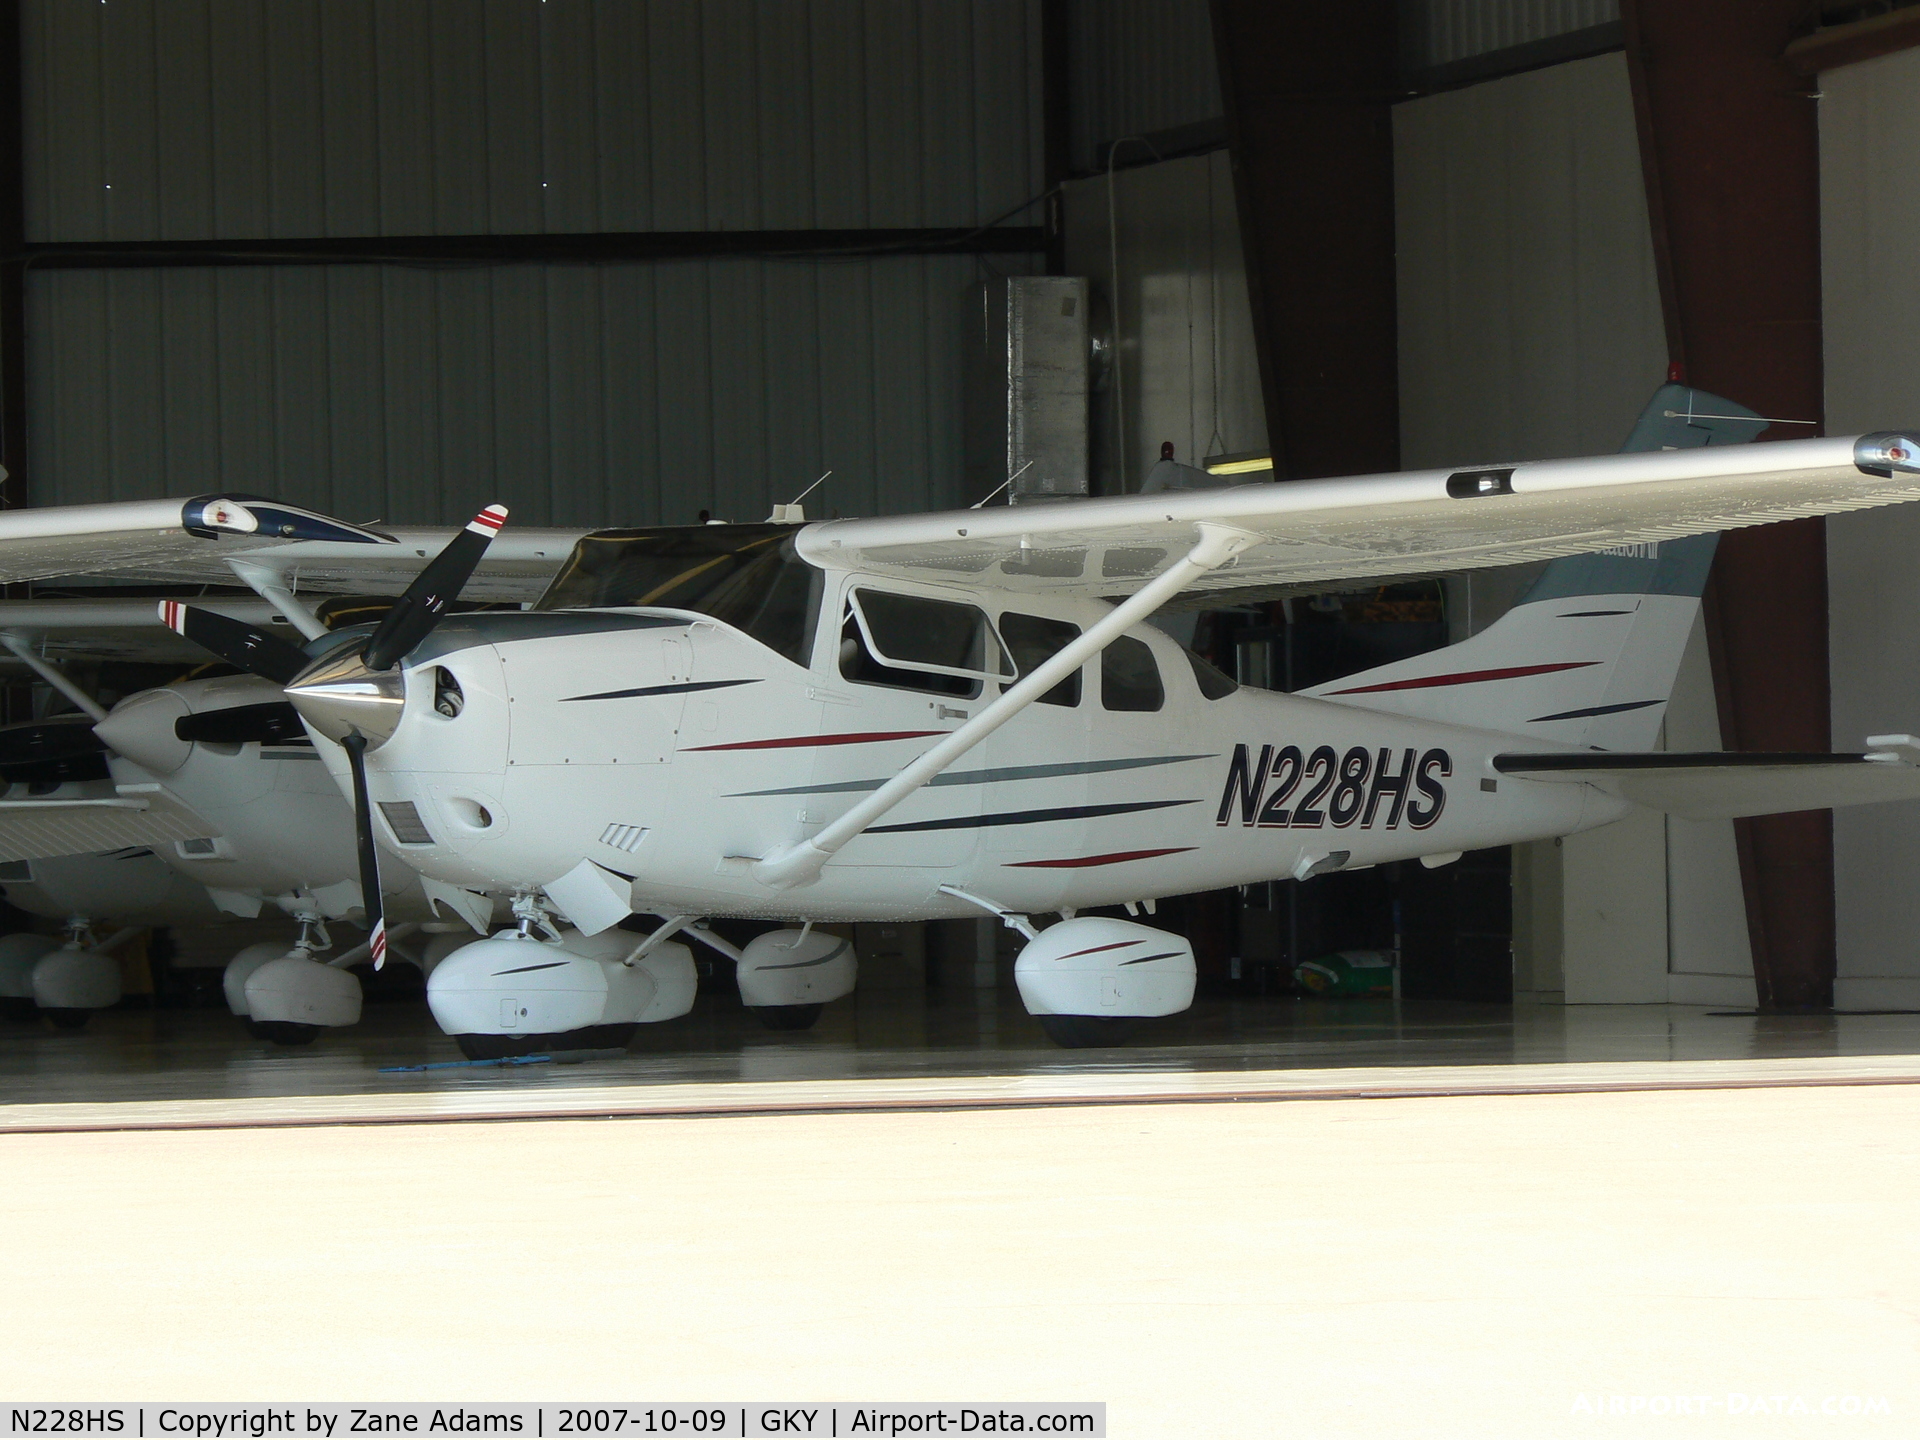 N228HS, 2003 Cessna T206H Turbo Stationair C/N T20608419, In the hanger